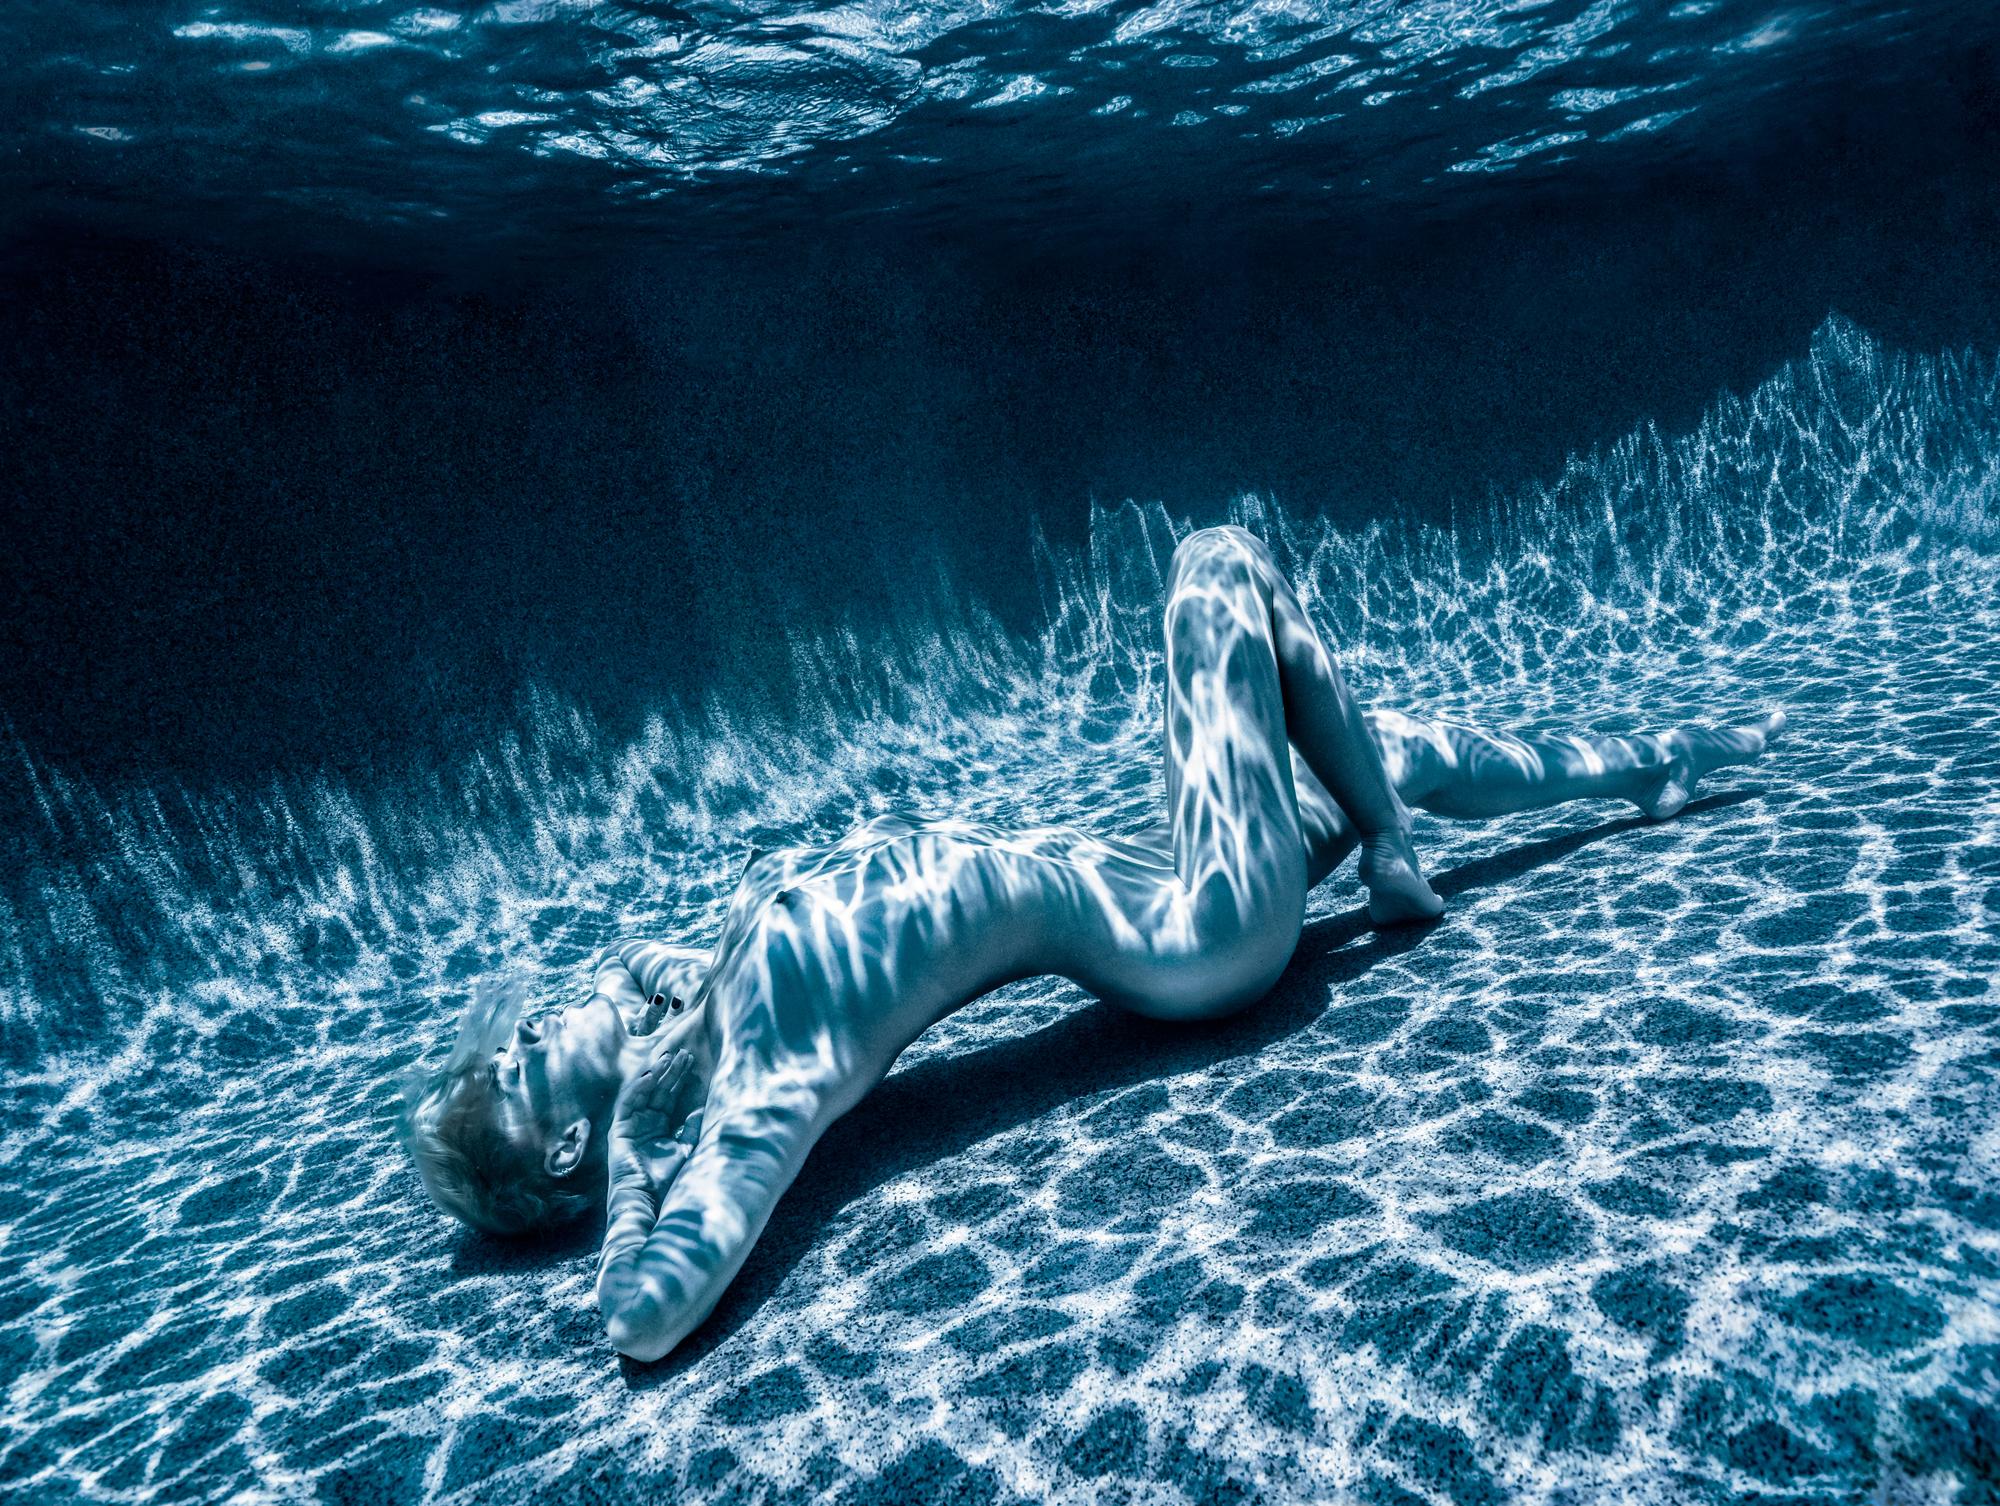 Nude Photograph Alex Sher - Clair de lune - photographie de nu subaquatique - tirage pigmentaire d'archives 26x35""